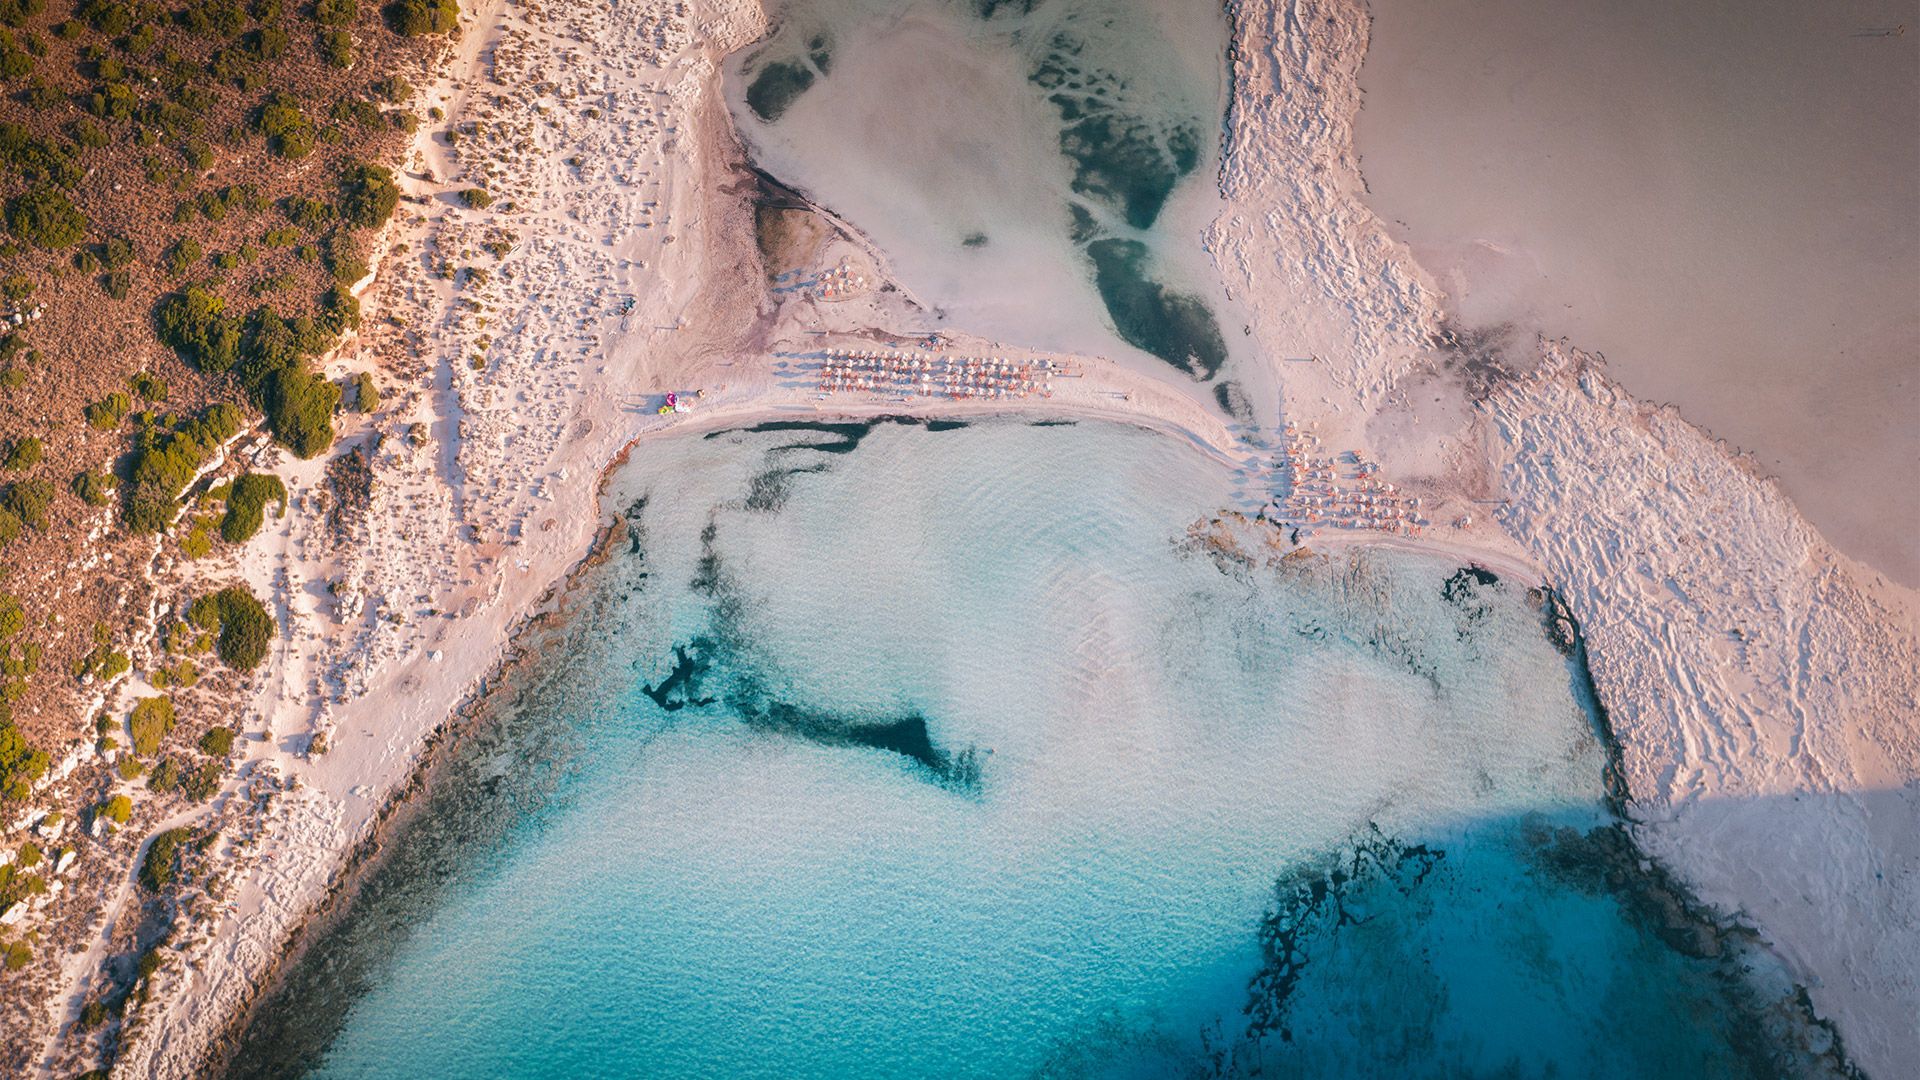 Τα εξωτικά γαλαζοπράσινα νερά του Μπάλου, Κρήτη